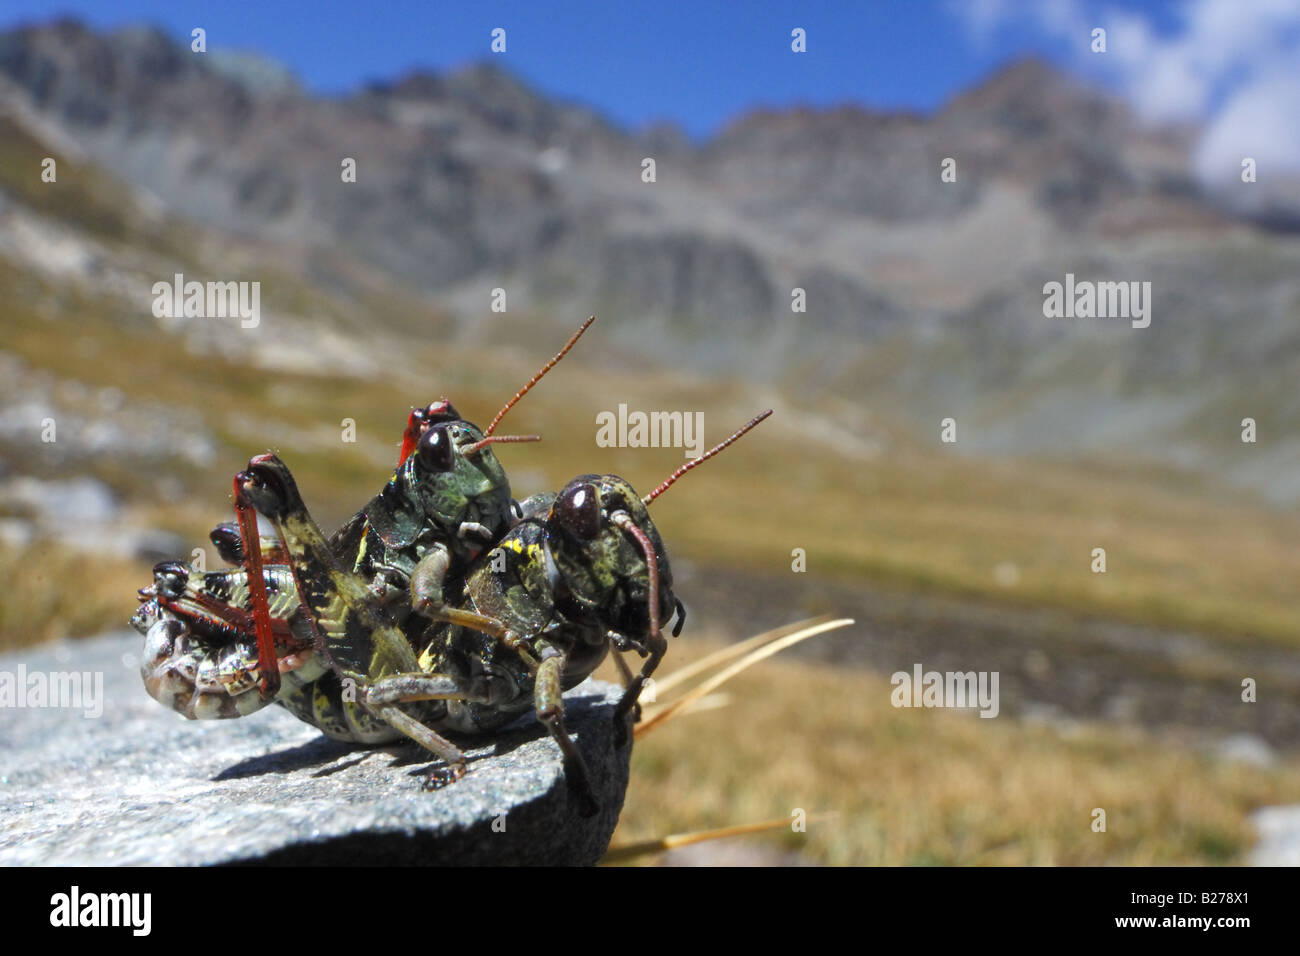 cricket coupling optoptera accoppiamento ortotteri cavalletta cavallette insetti montagna vallone del Louson Cogne Parco Naziona Stock Photo